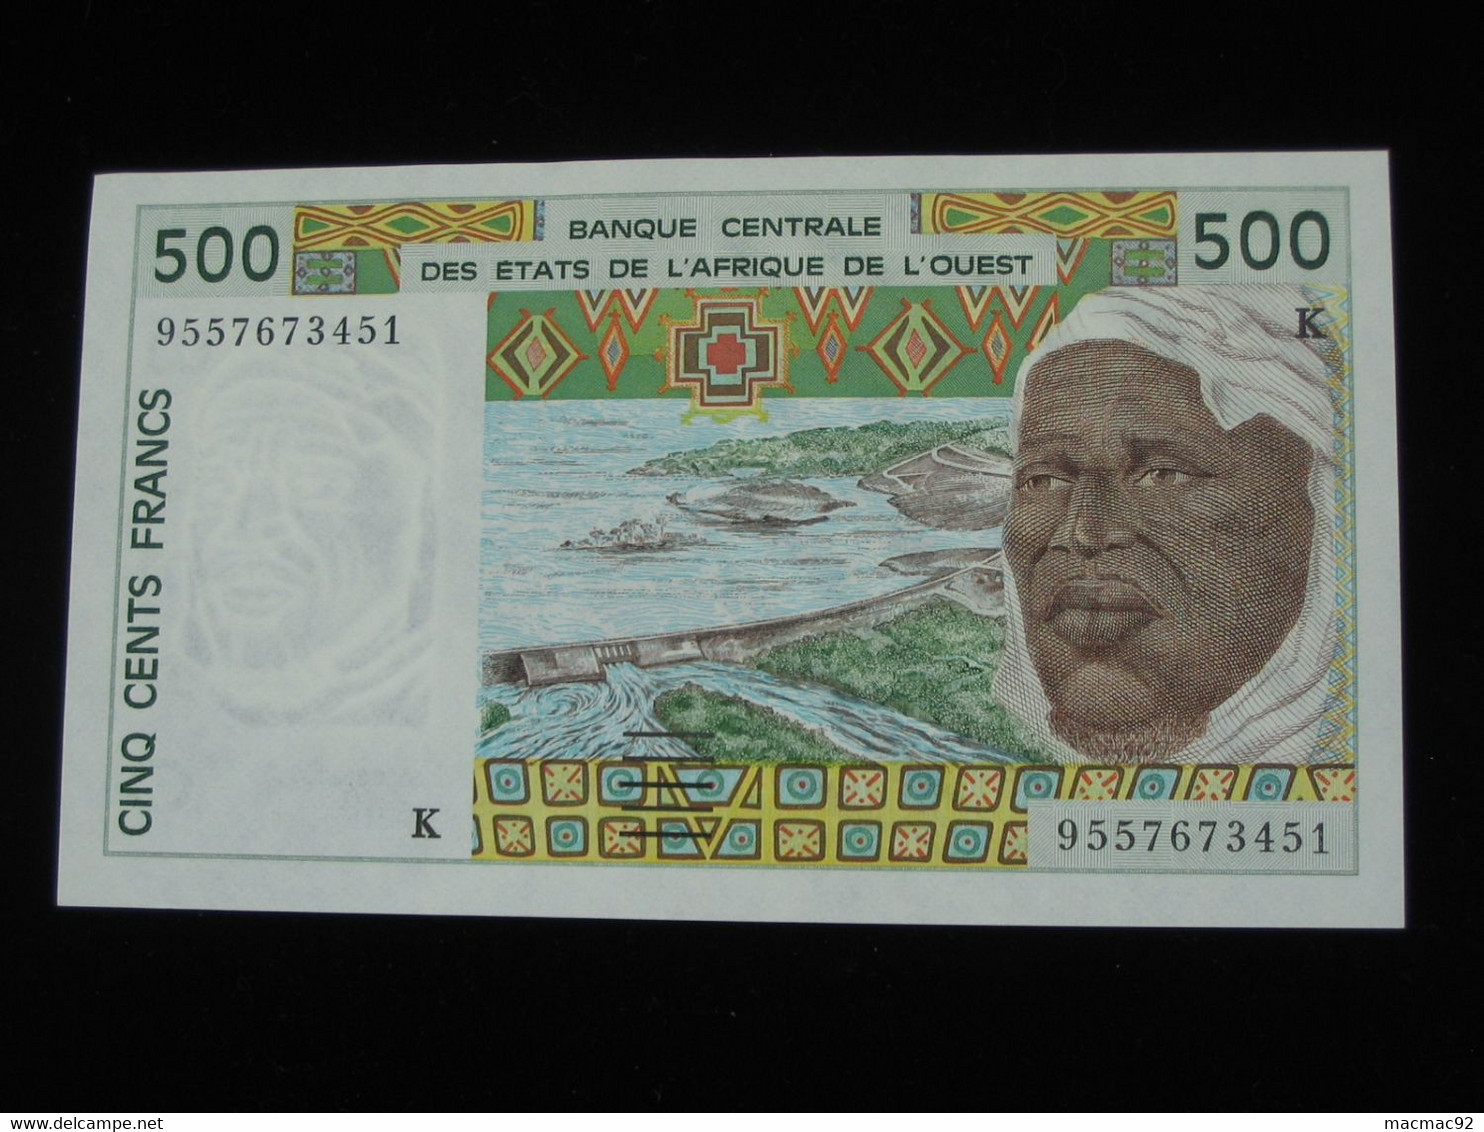 SENEGAL - 500 Francs 1994-1995 K - Banque Centrale Des Etats De L'Afrique De L'Ouest  **** EN ACHAT IMMEDIAT **** - Senegal